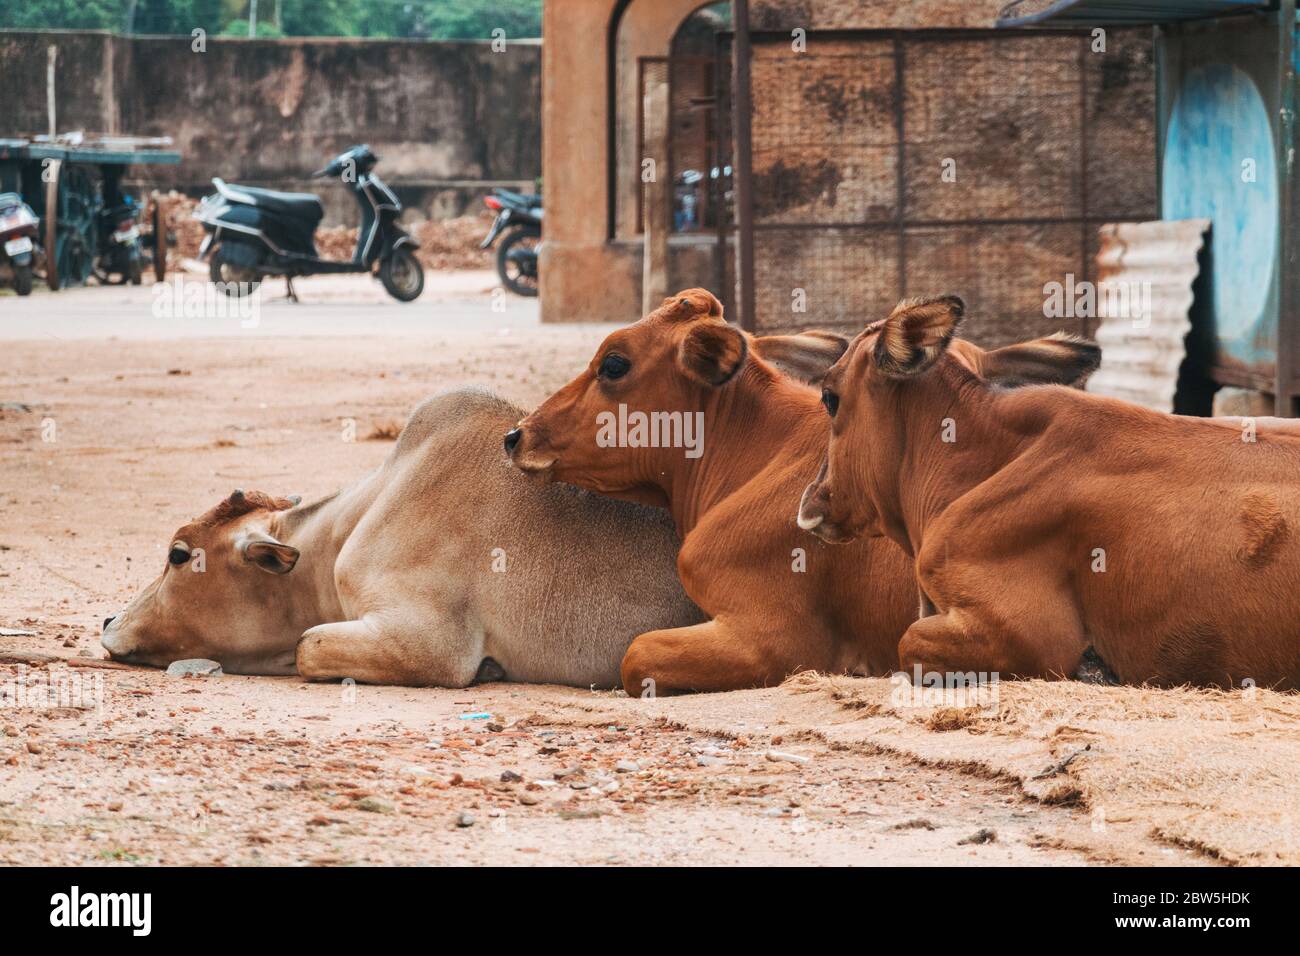 Trois veaux sont ensemble sur une route de terre à Tamil Nadu, en Inde Banque D'Images